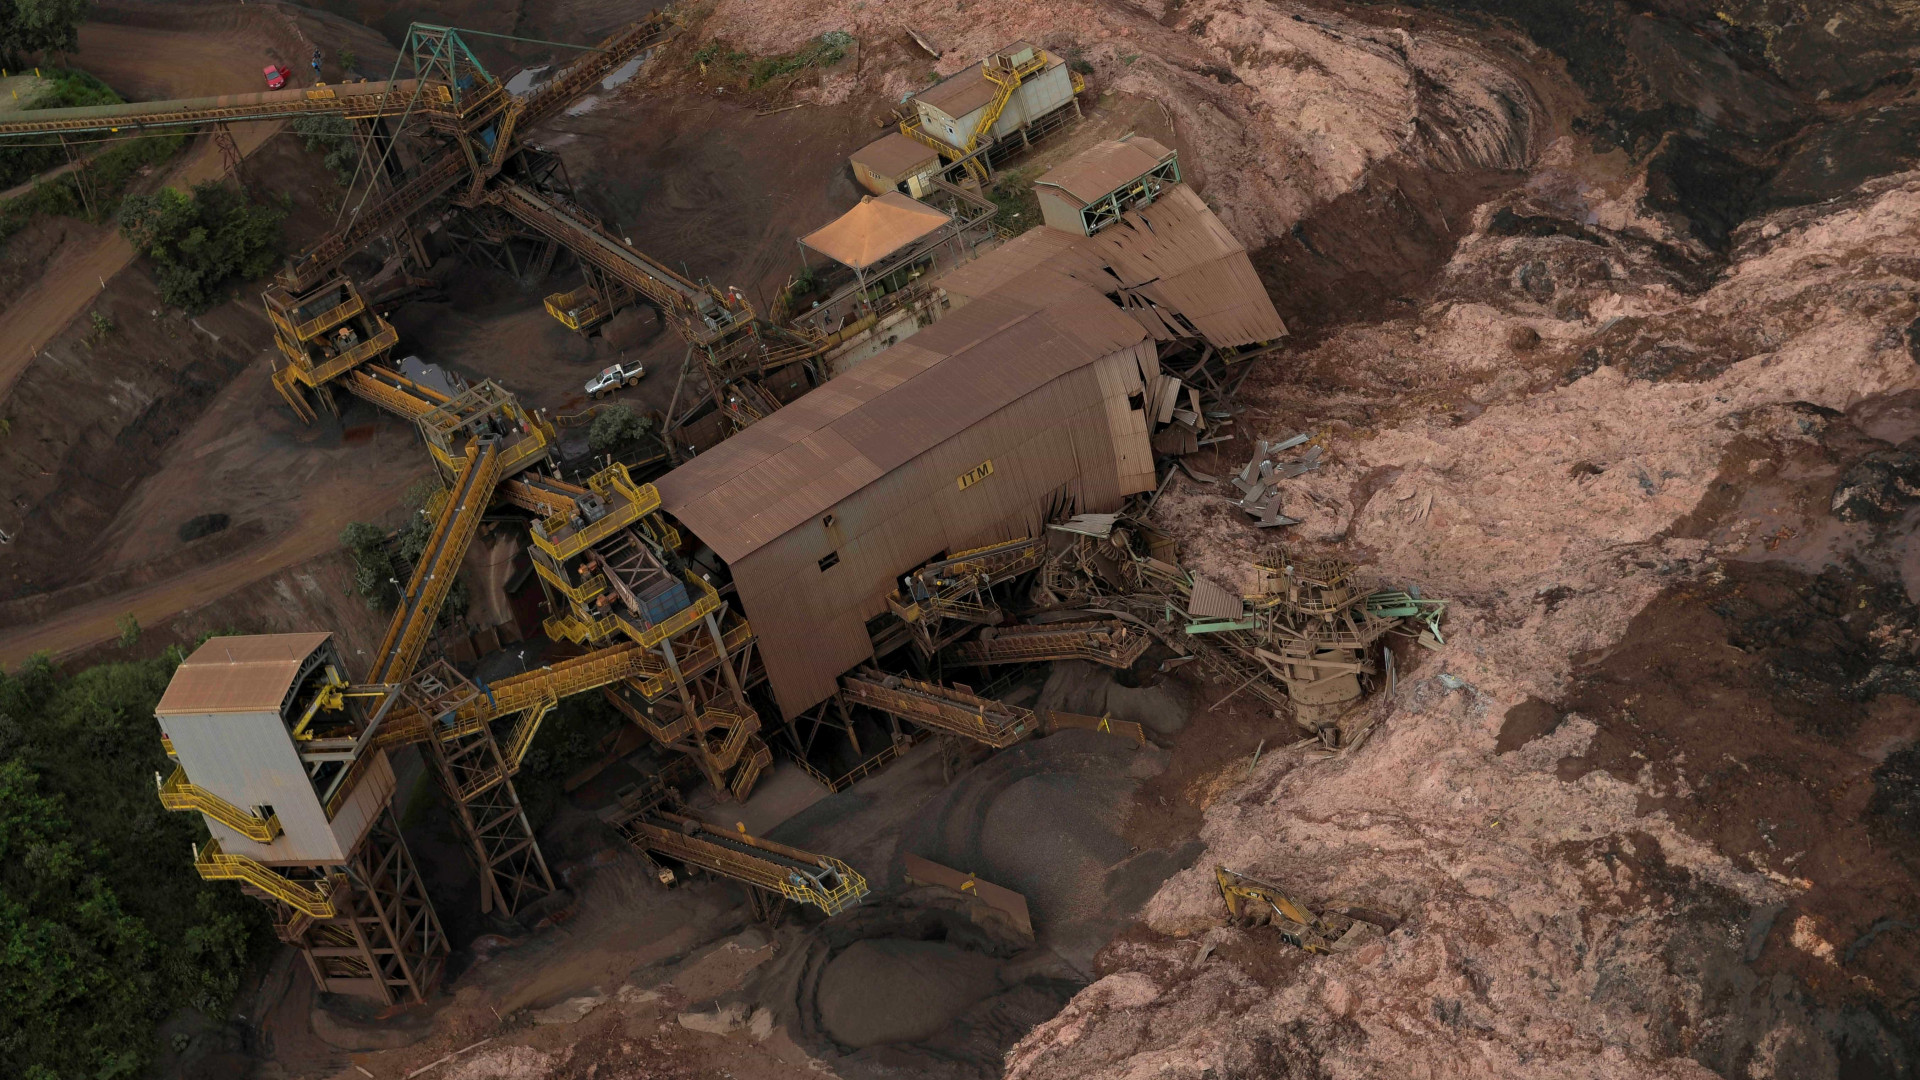 Agência de mineração cobrará barragens por informações sobre segurança